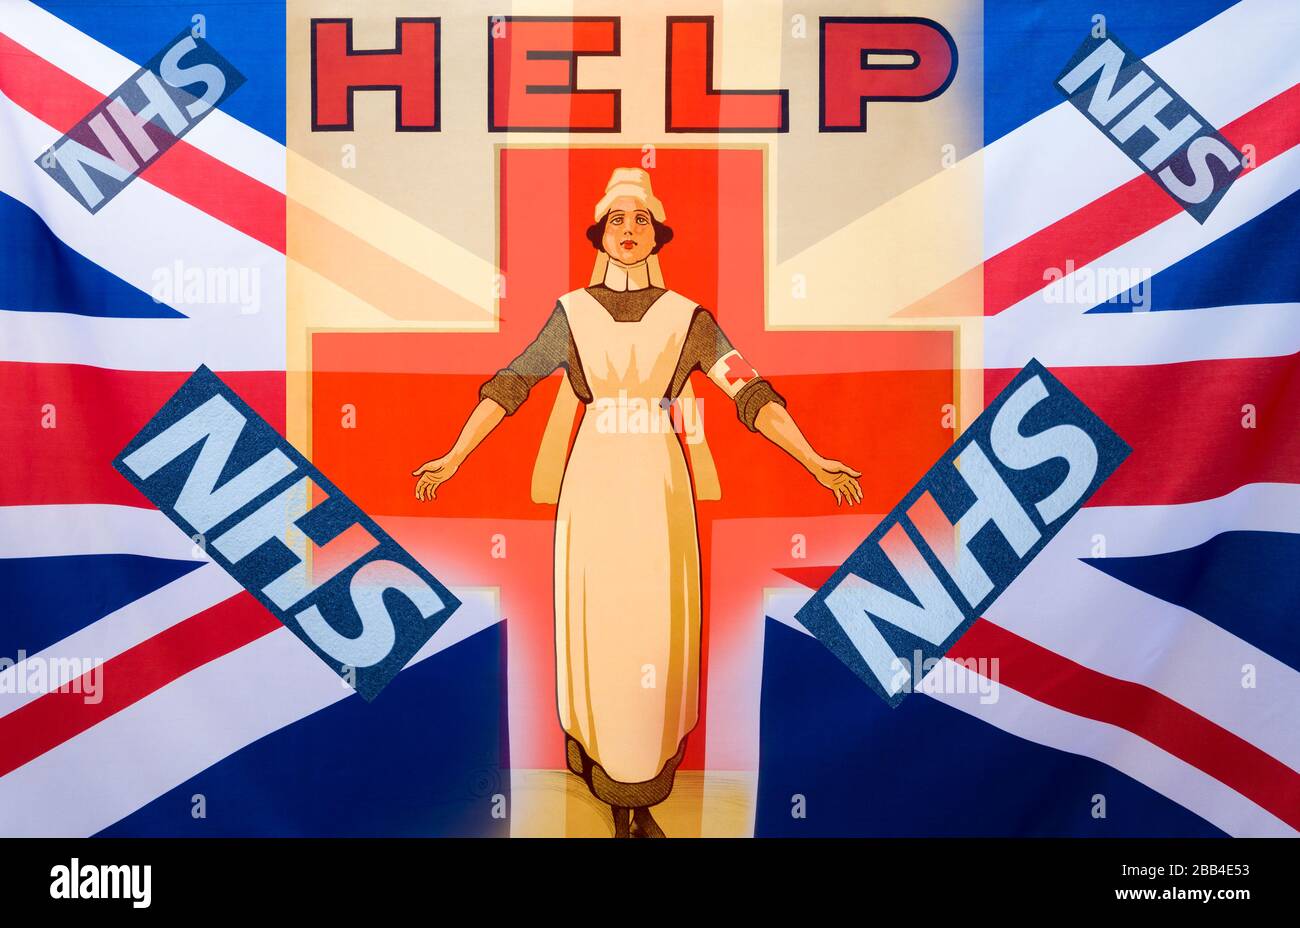 Image of nurse and NHS (National Health Service) logo blended with UK Union Jack flag. Nurse, Nurses shortage, NHS funding, Coronavirus... Concept Stock Photo